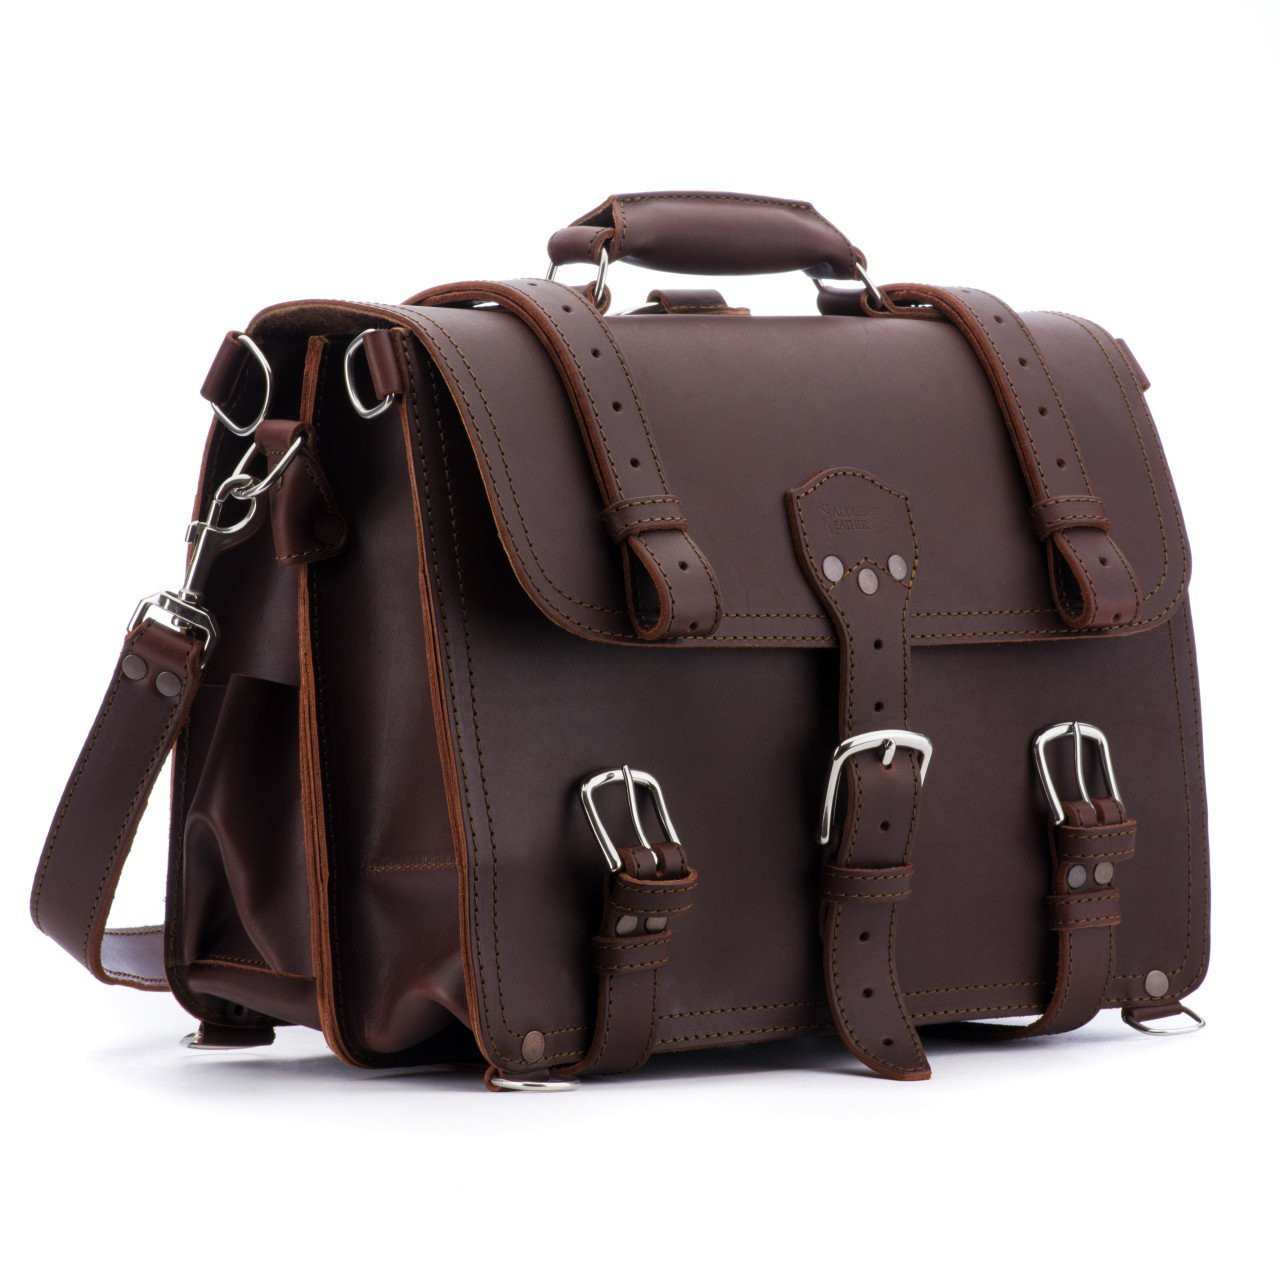 ESTARER Men's Leather Briefcase for Travel/Office/Business 15.6 Inch Laptop  Messenger Bag